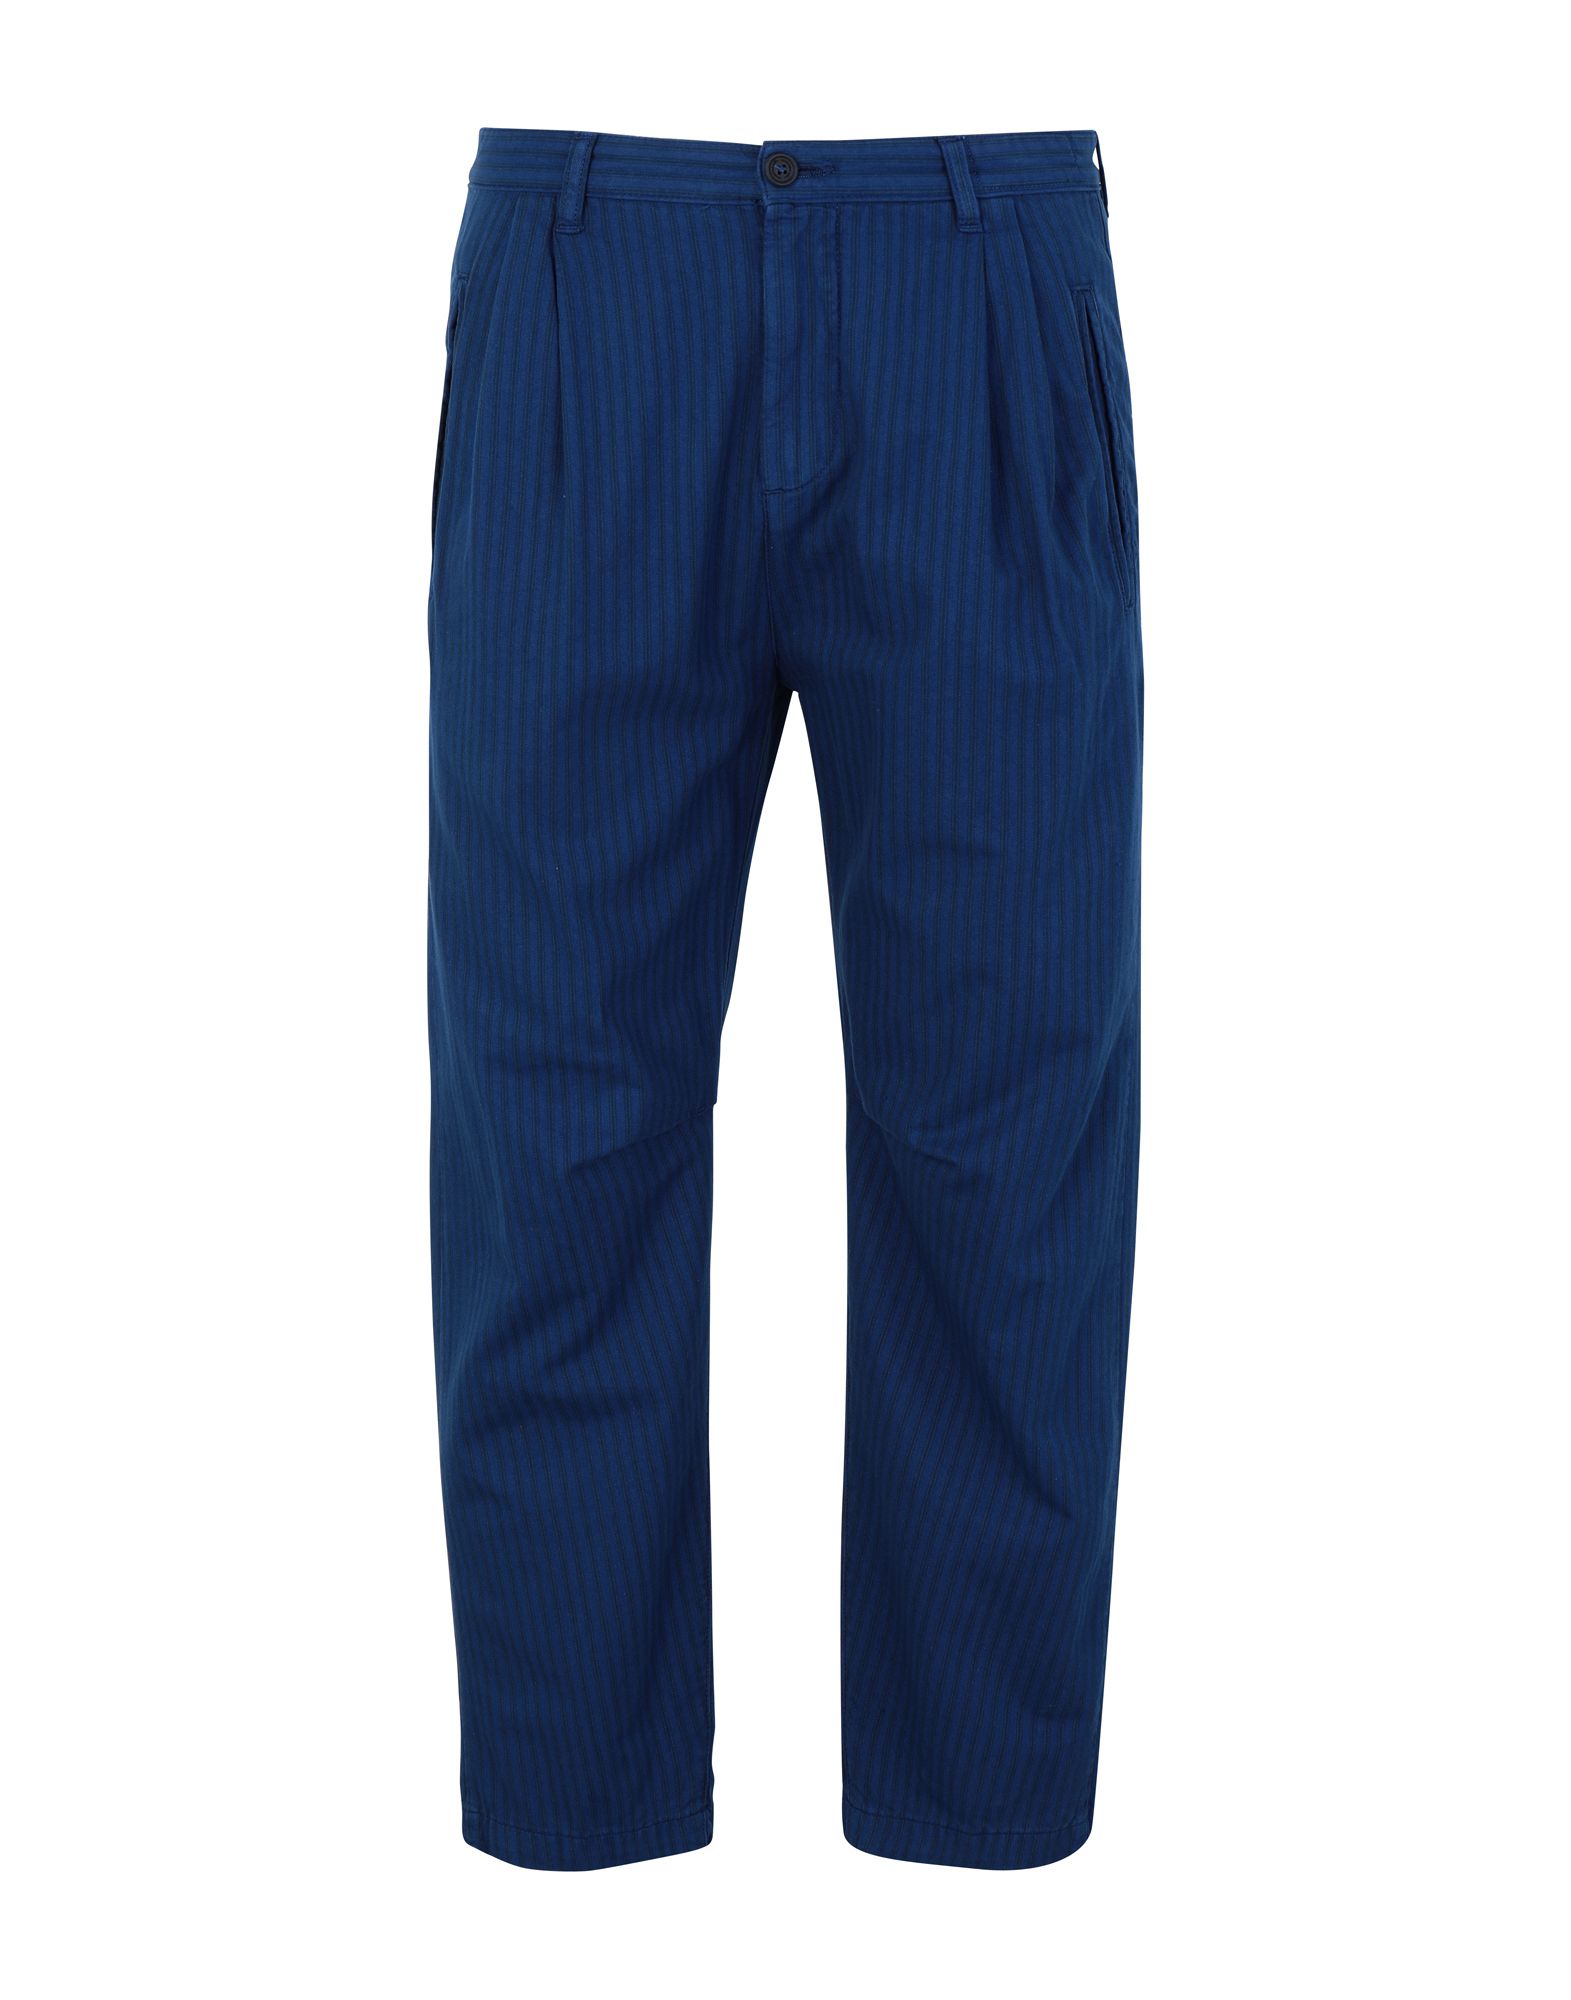 《期間限定セール開催中!》MASSIMO ALBA メンズ パンツ ブルー 48 コットン 100% SCOTTA